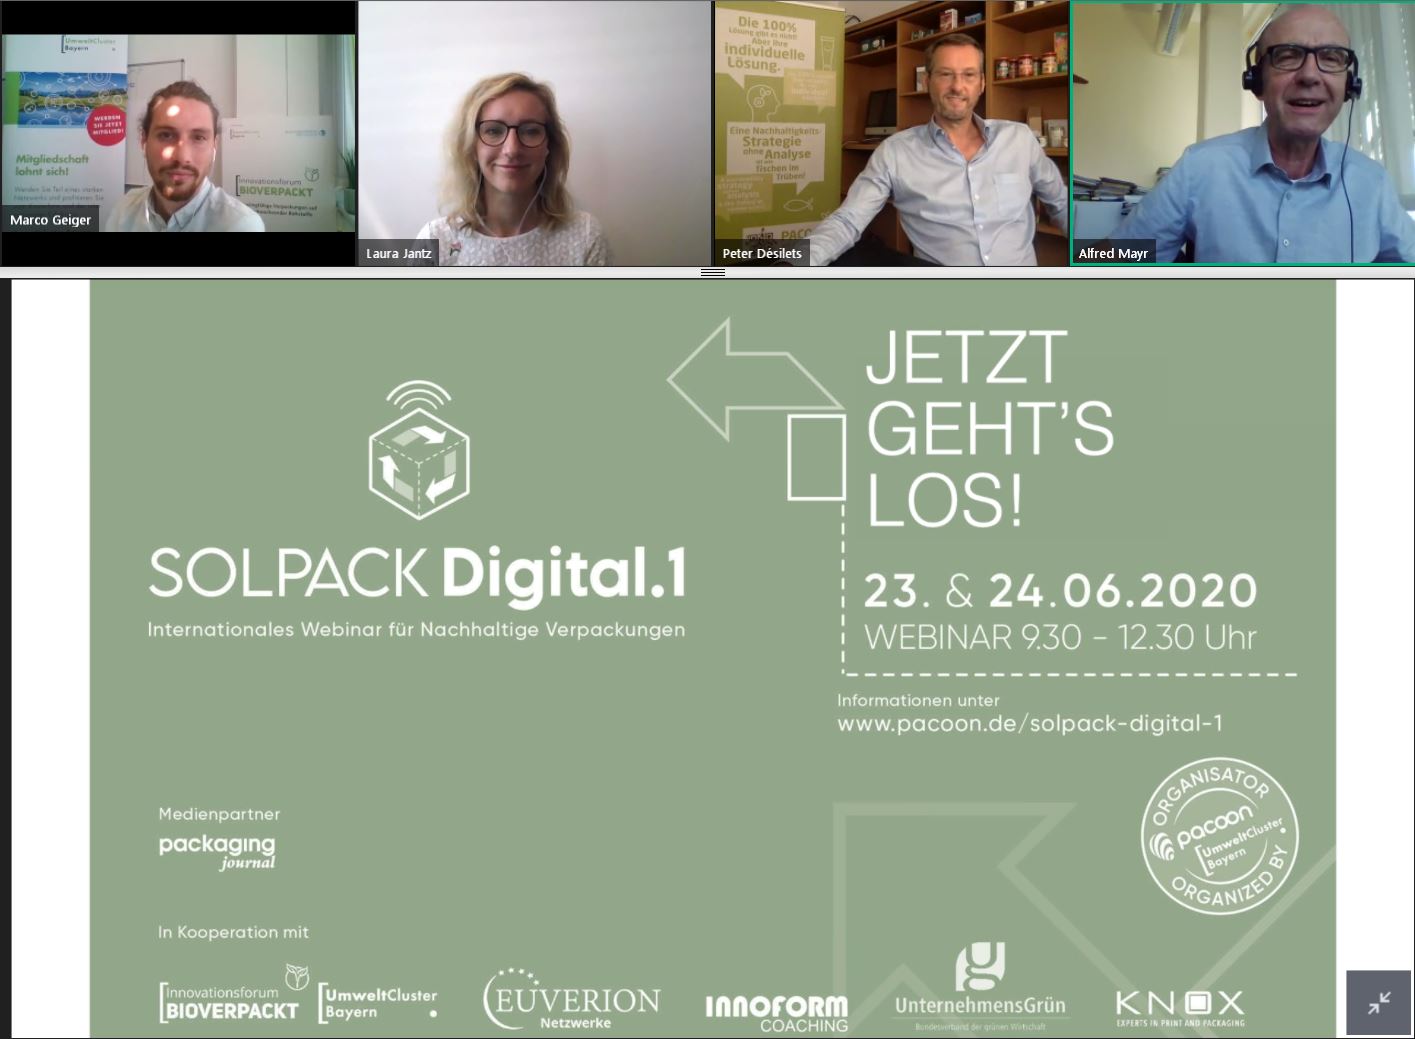 SOLPACK Digital.1 | 24.06.2020 | Tag 2 | Innovationsforum BIOVERPACKT (Umweltcluster Bayern) | "Bewertungskriterien für nachhaltige (biobasierte) Verpackungen"